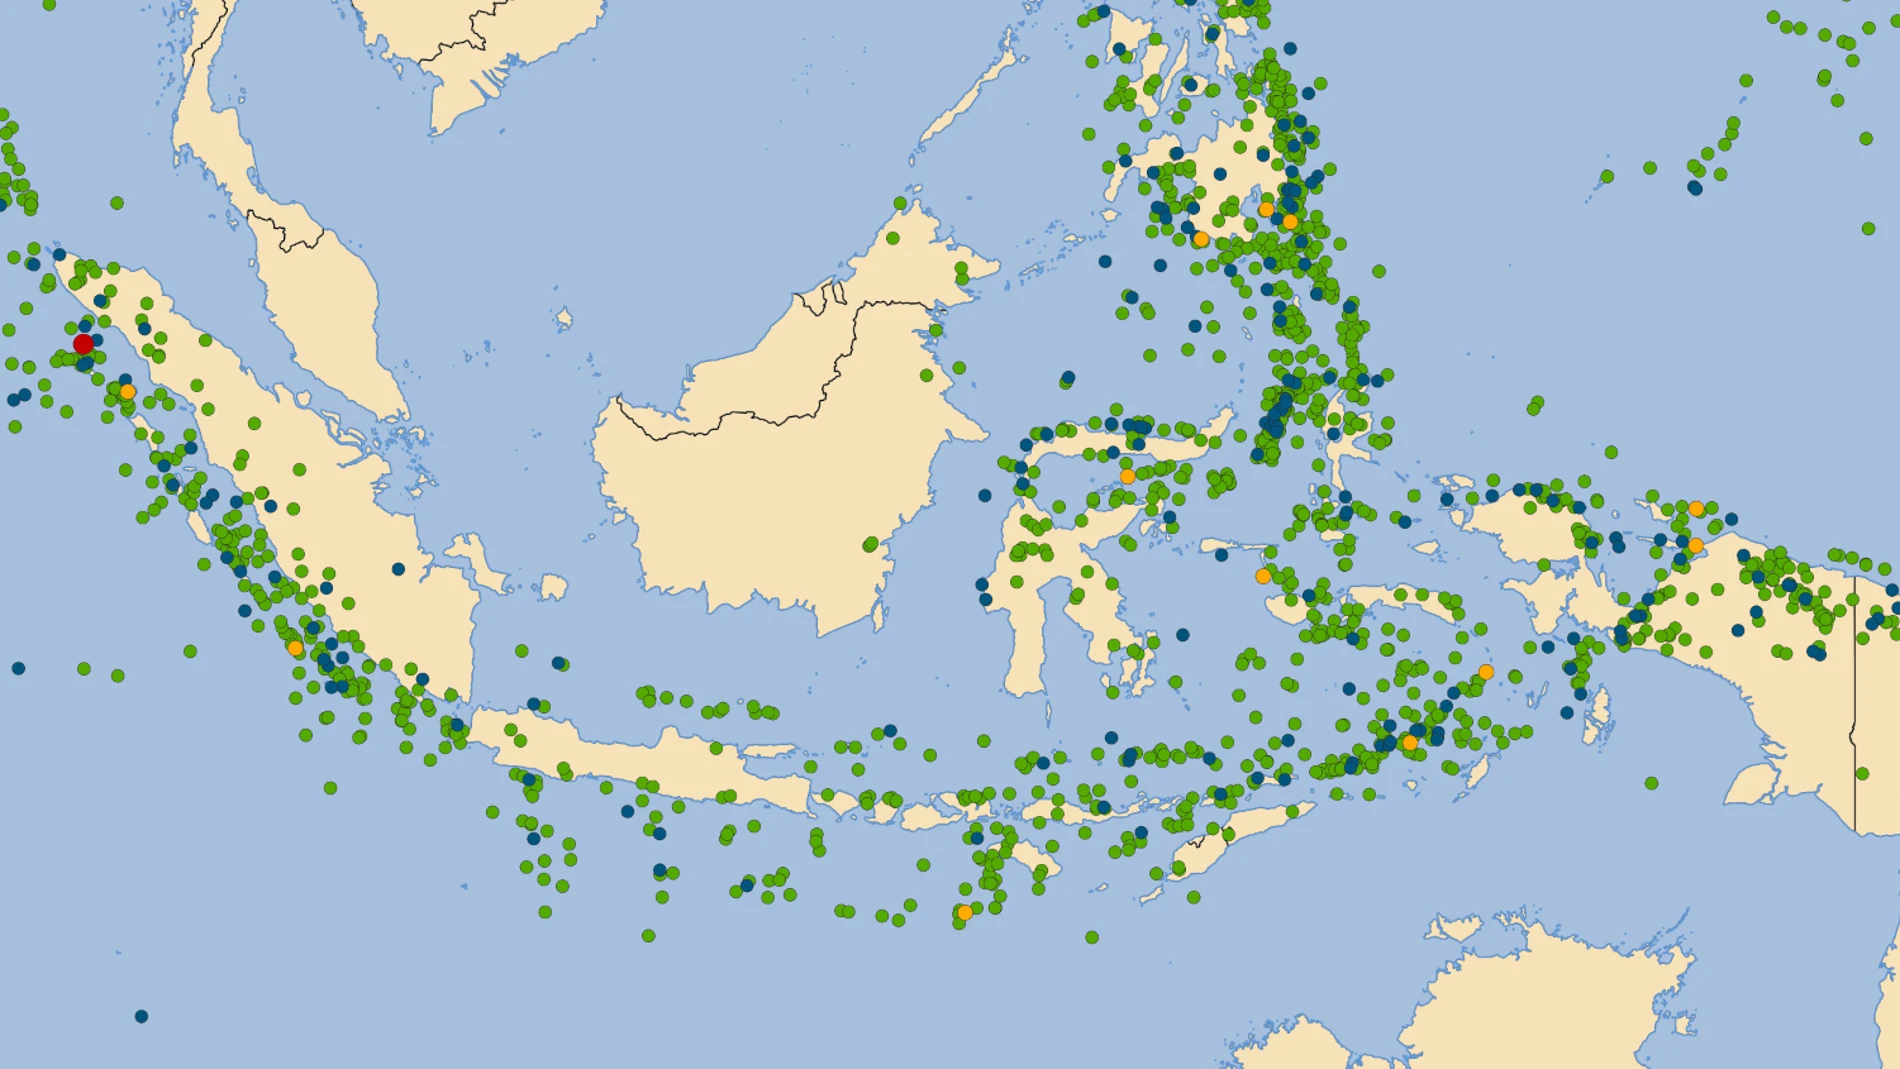 Este mapa muestra los terremotos registrados en la zona de Indonesia entre 1902 y 2019. En verde aparecen los de magnitud 6, en azul los de magnitud 7, en naranja los de magnitud 8 y en rojo los de magnitud 9. La escala original de Richter no habría podido medir correctamente los azules, naranjas y rojos, y habría dado para todos ellos una magnitud similar.